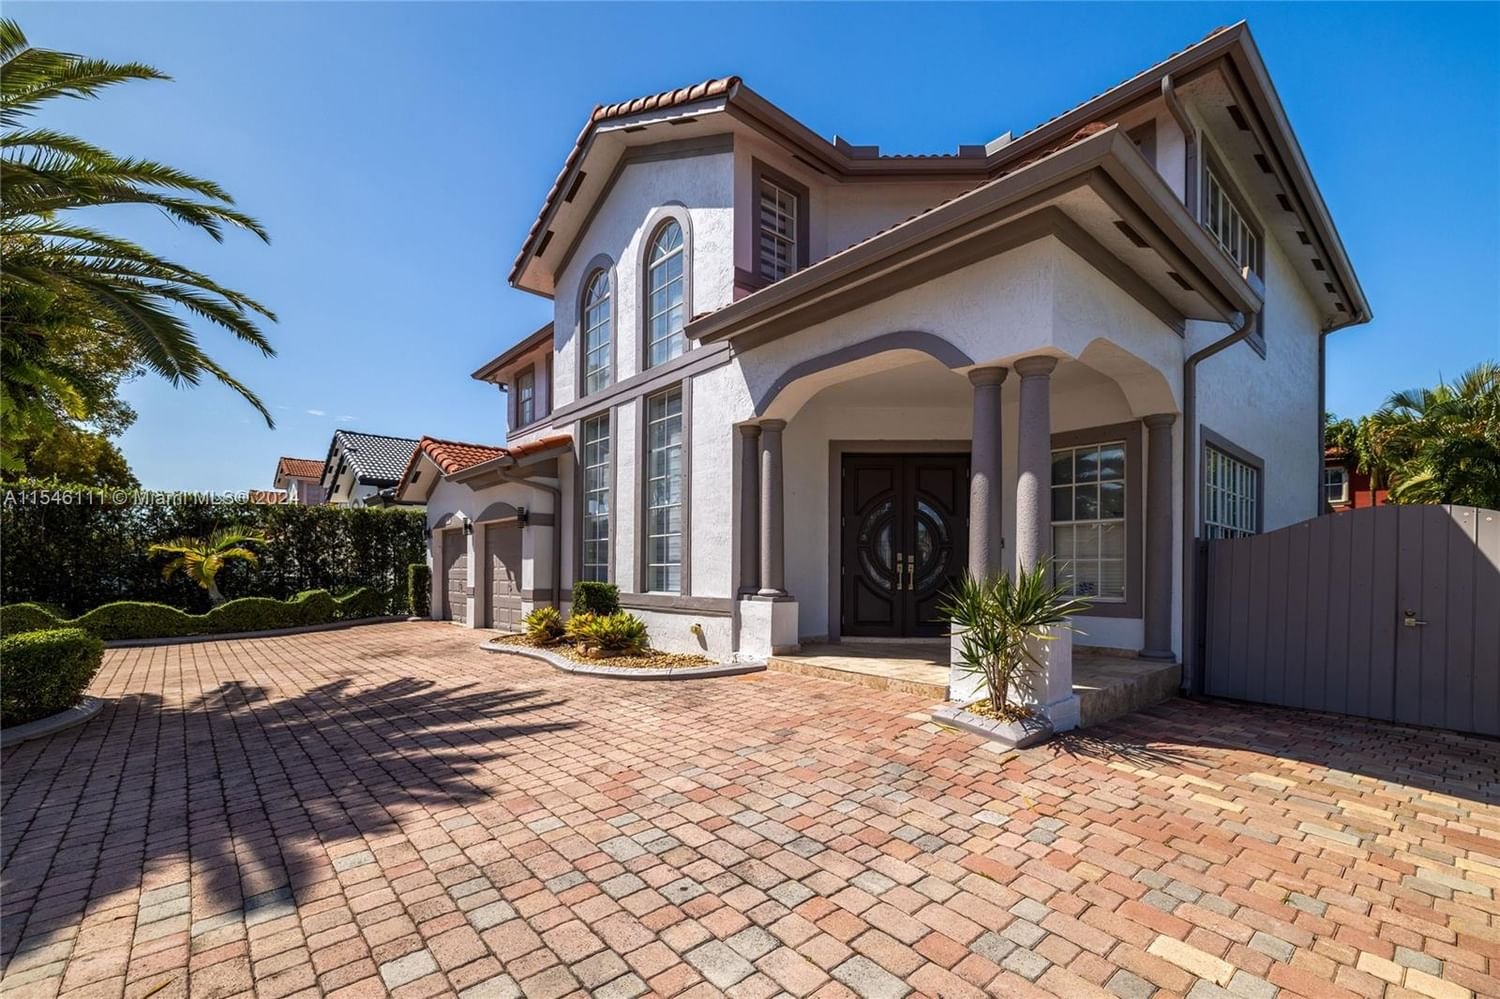 Real estate property located at 3102 147 ct, Miami-Dade County, Camino real estates, Miami, FL